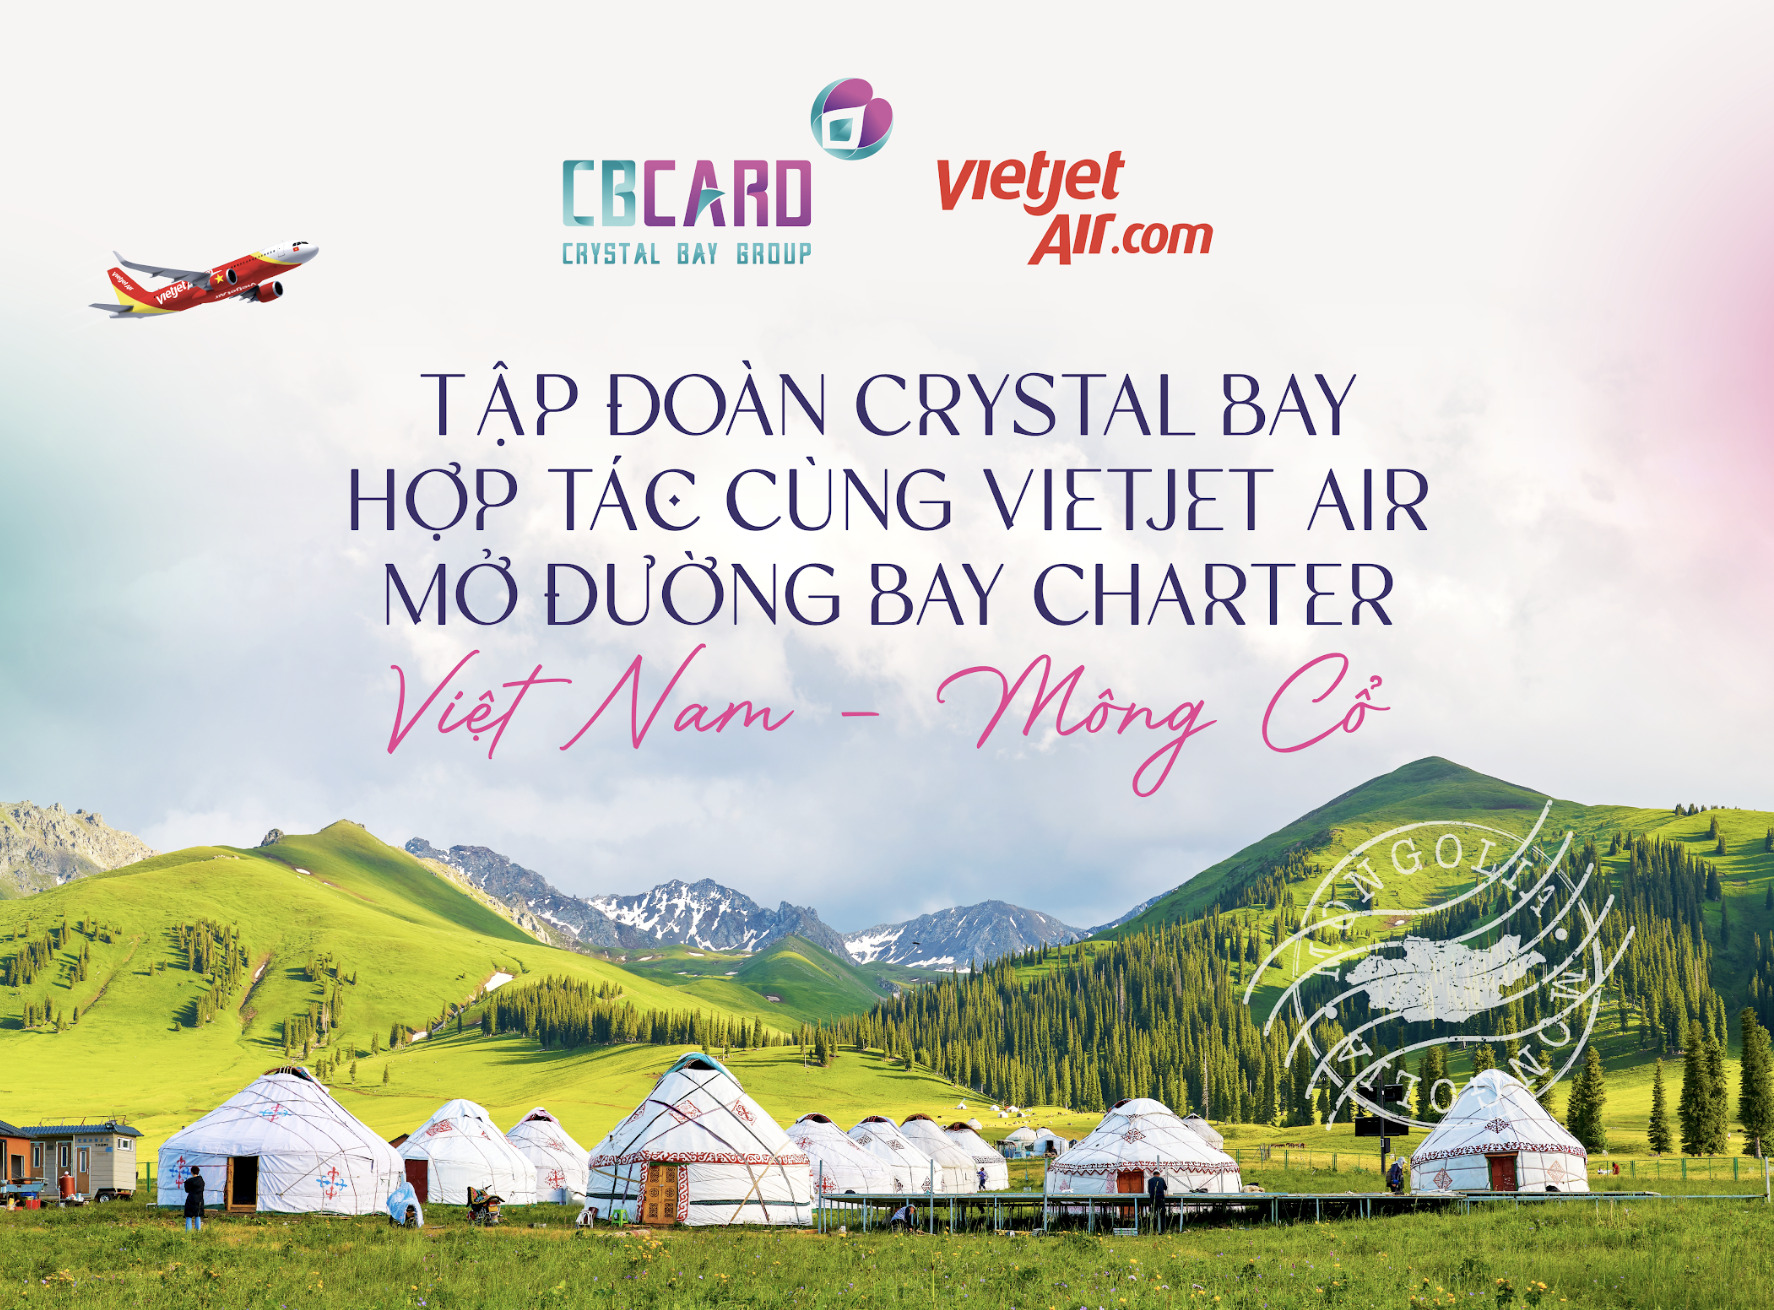 Crystal Bay ký hợp tác với VJ đường bay charter từ Mông Cổ về Cam Ranh.